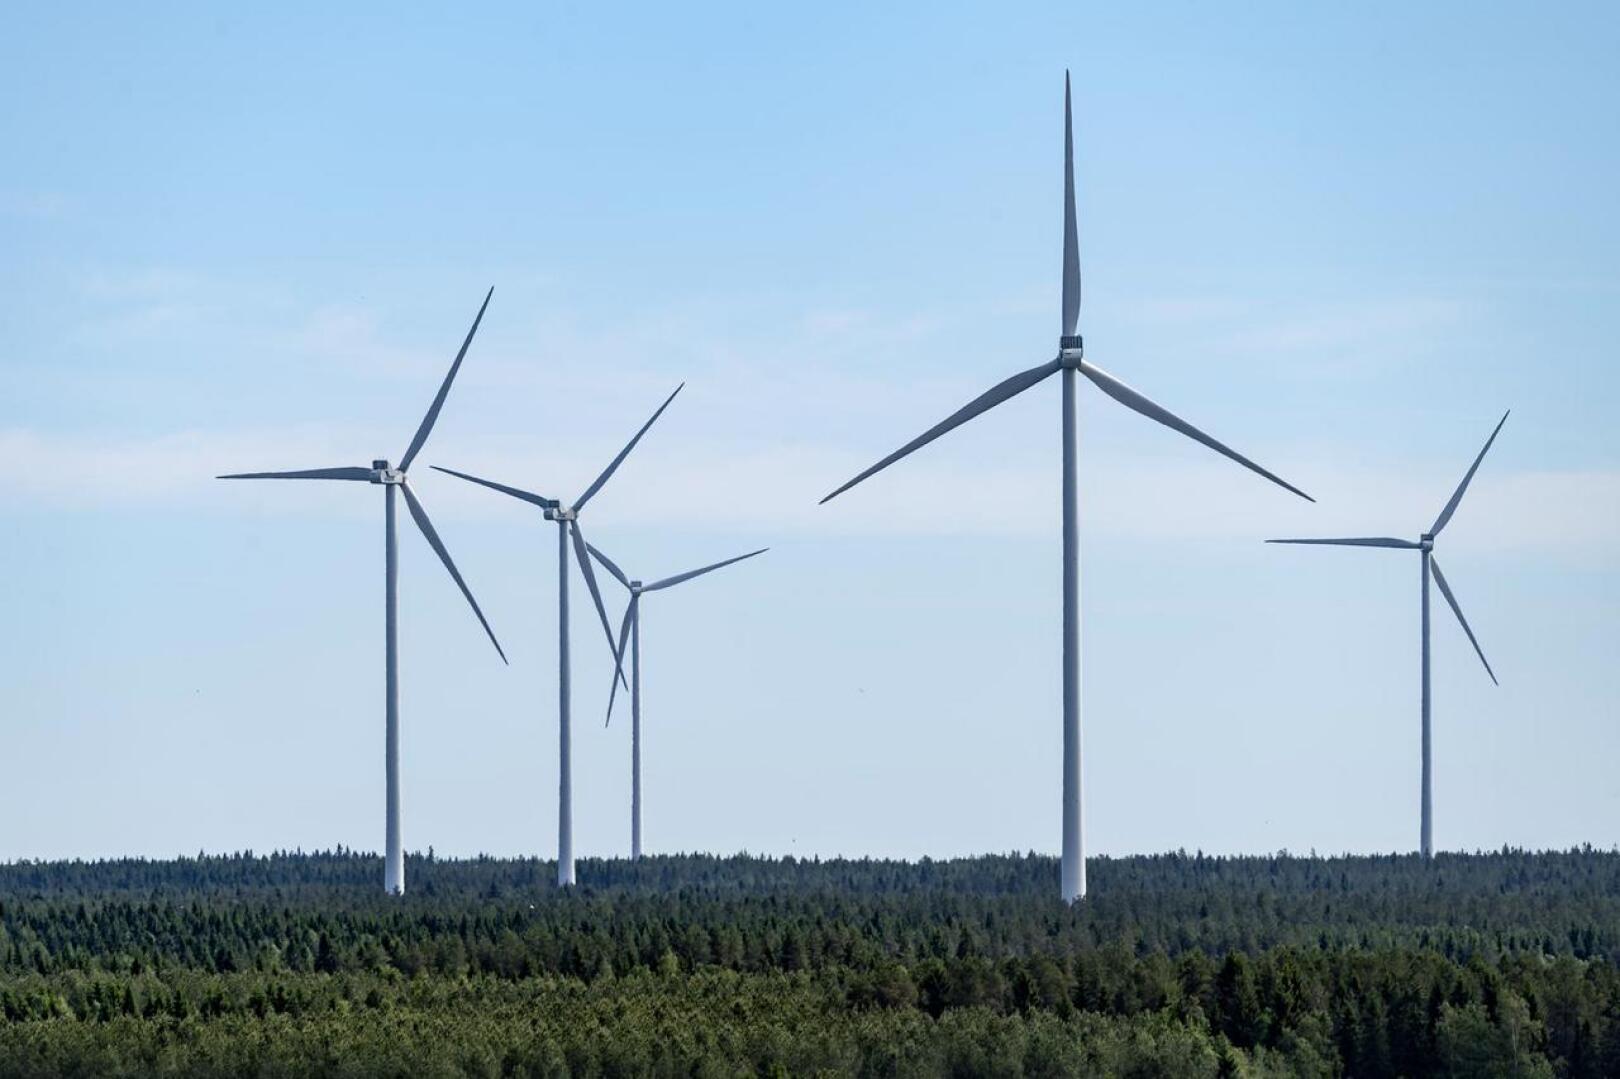 Google ostaa tulevaisuudessa sähköä Kalajoelta, Kannuksesta ja Kokkolasta. Mutkalammin tuulivoimapuiston rakennustöiden suunnitellaan käynnistyvän alkuvuodesta 2021 ja suunniteltu käyttöönotto tapahtuu seuraavan vuoden lopussa. Kuvassa tuulivoimaloita Kalajoella. 